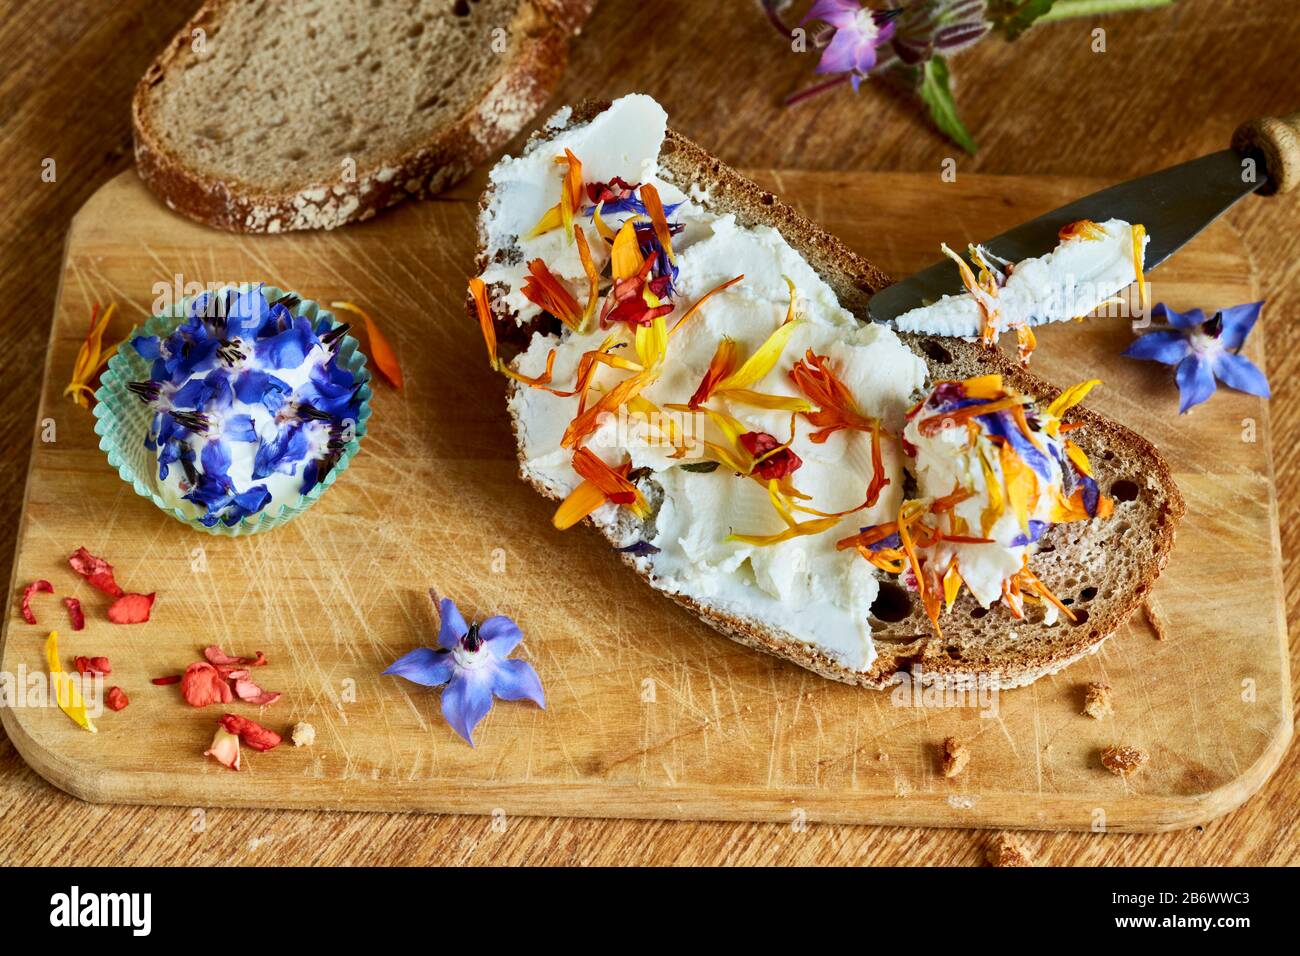 Kinder, die Lebensmittel untersuchen. Essbare Blumen auf einer Scheibe Brot mit Frischkäse. Lernen nach dem Reggio-Pädagogik-Prinzip, spielerisches Verständnis und Entdeckung. Deutschland. Stockfoto